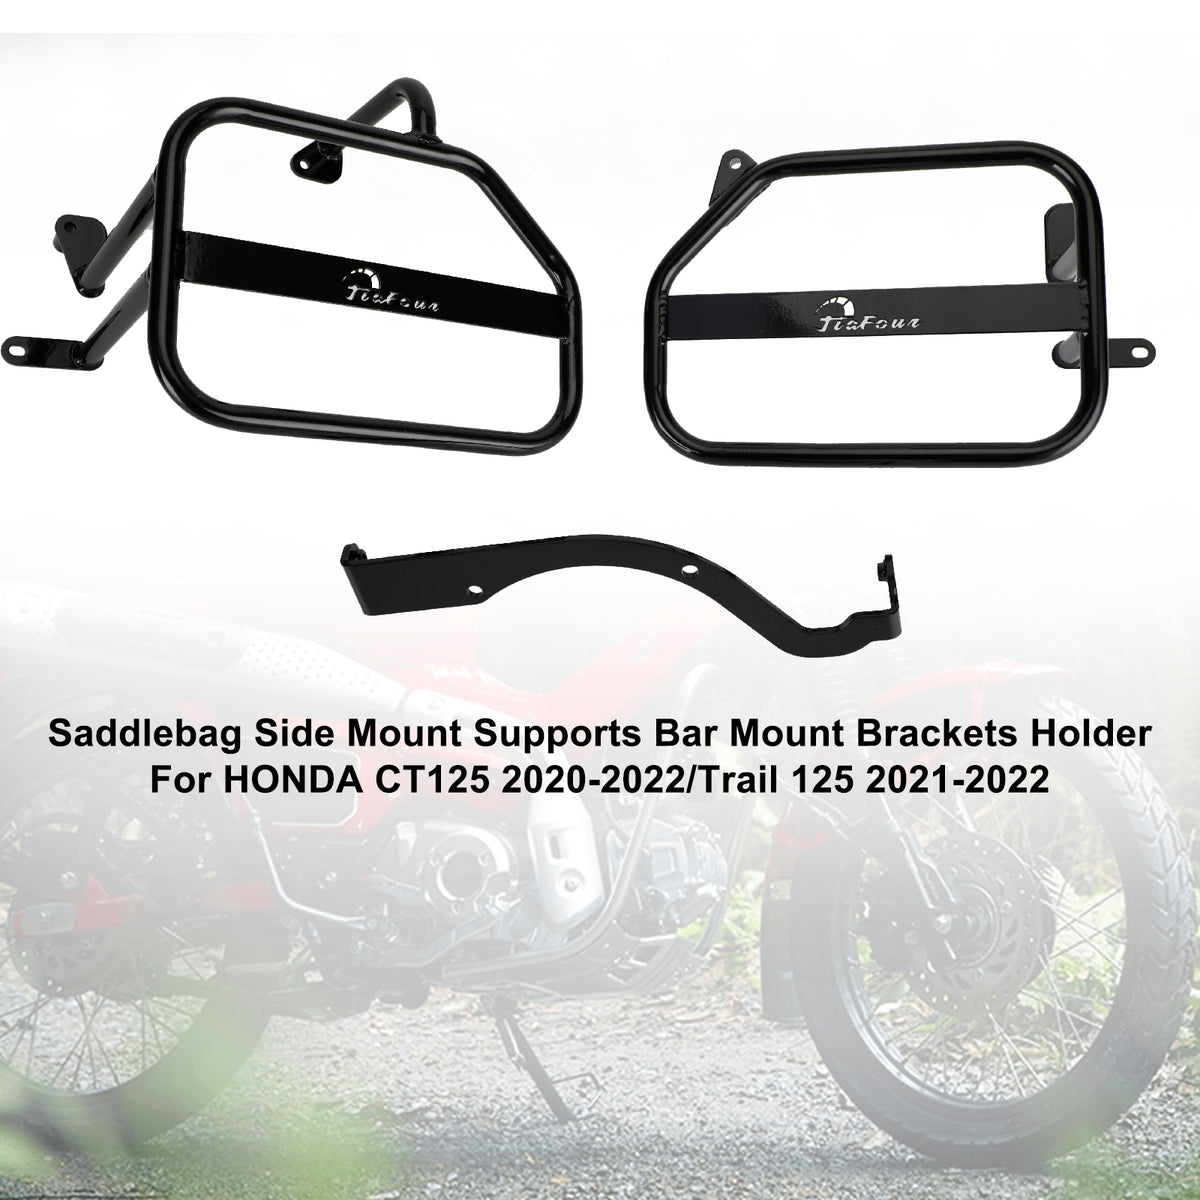 Black Saddlebag Support Mounting Bracket For Honda Ct125 20-22 Trail 125 21-22